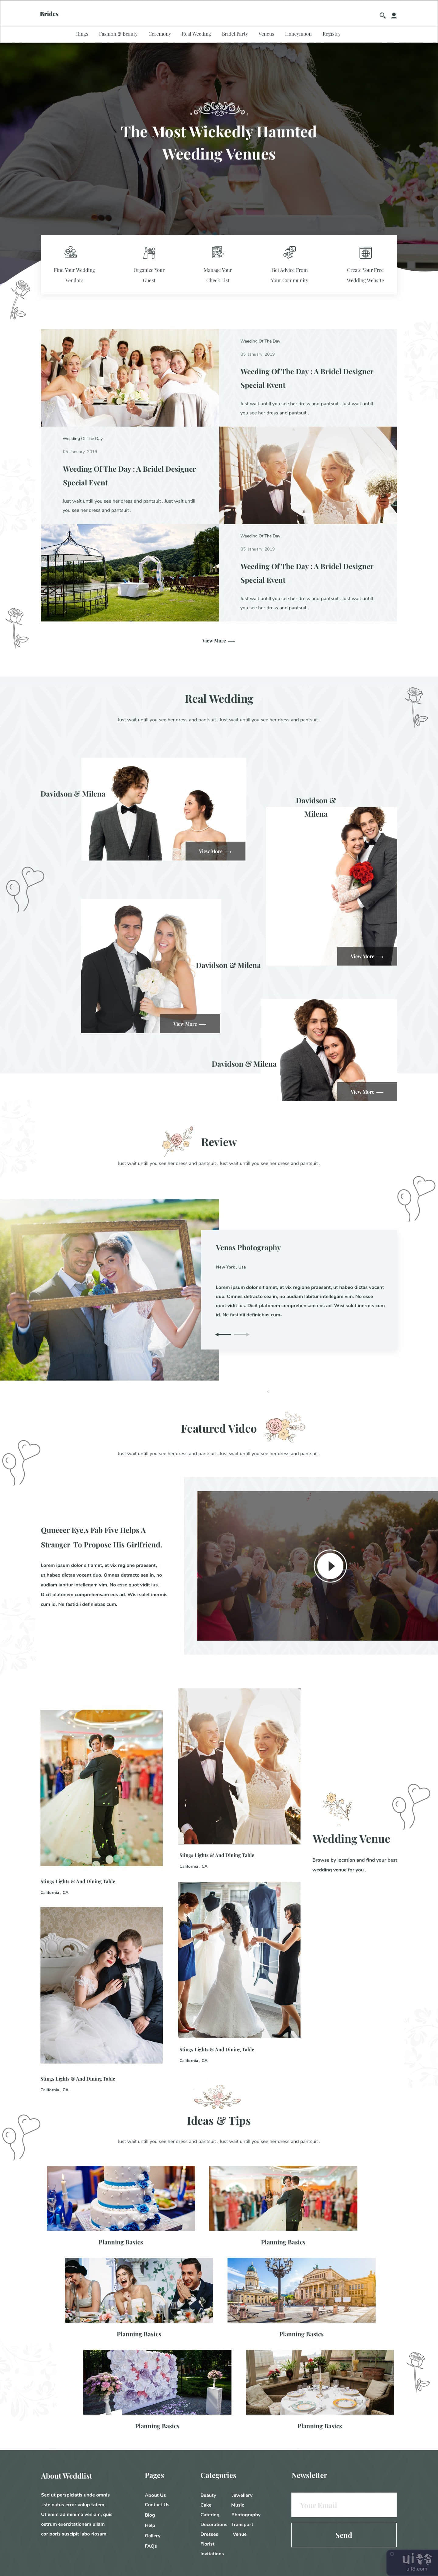 婚礼供应商登陆页面(Wedding Vendor Landing Page)插图